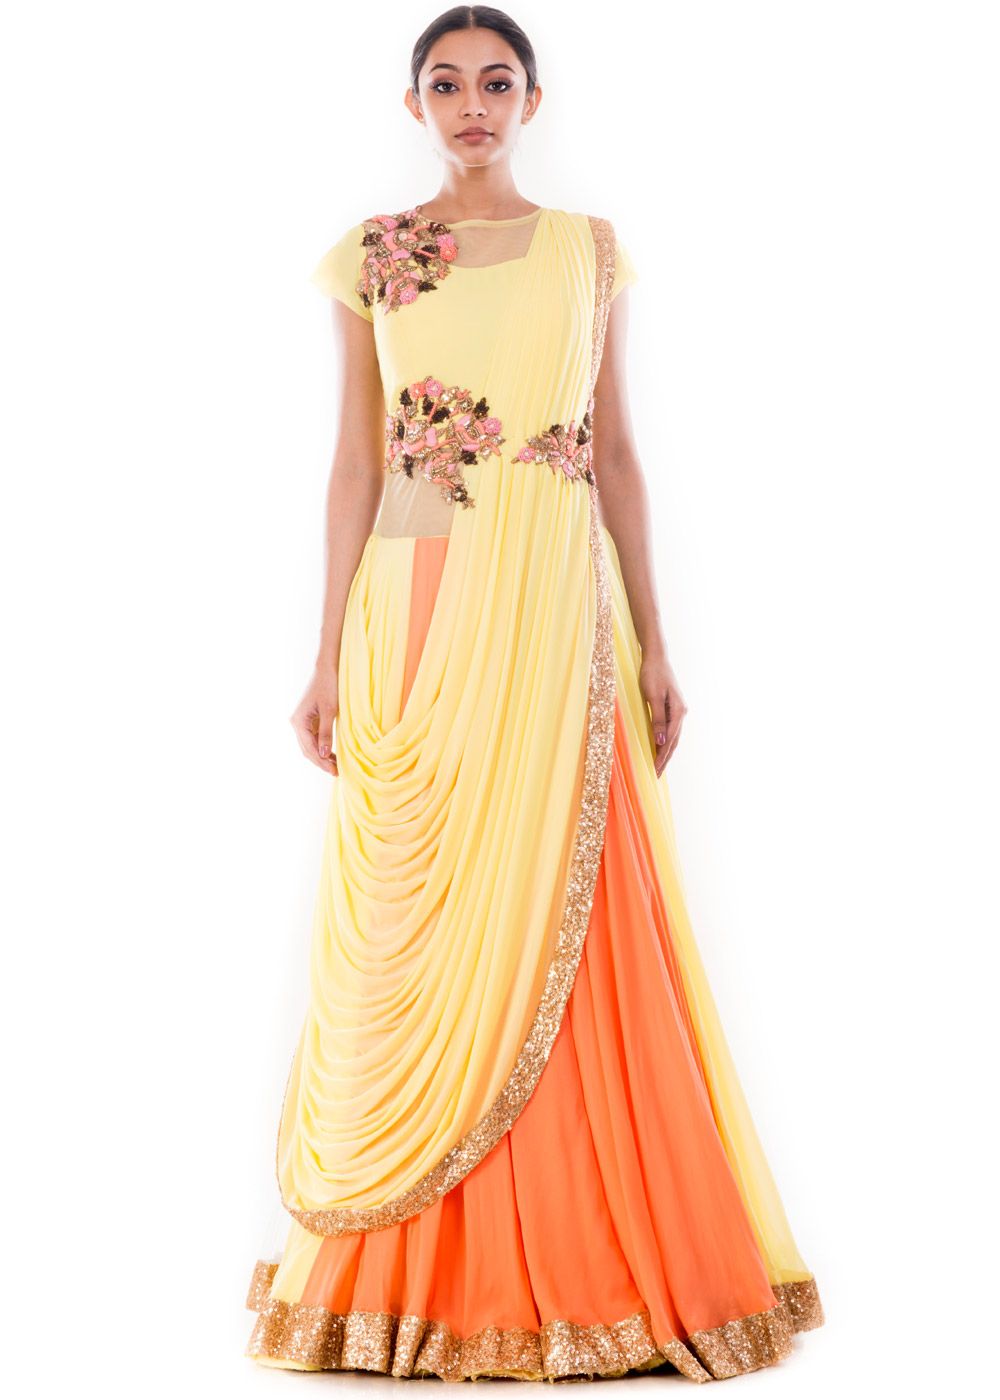 Kiara Advani goes on a chic parade from a maxi dress to JJ Valaya's  zebra-printed saree; Yay or Nay? | PINKVILLA